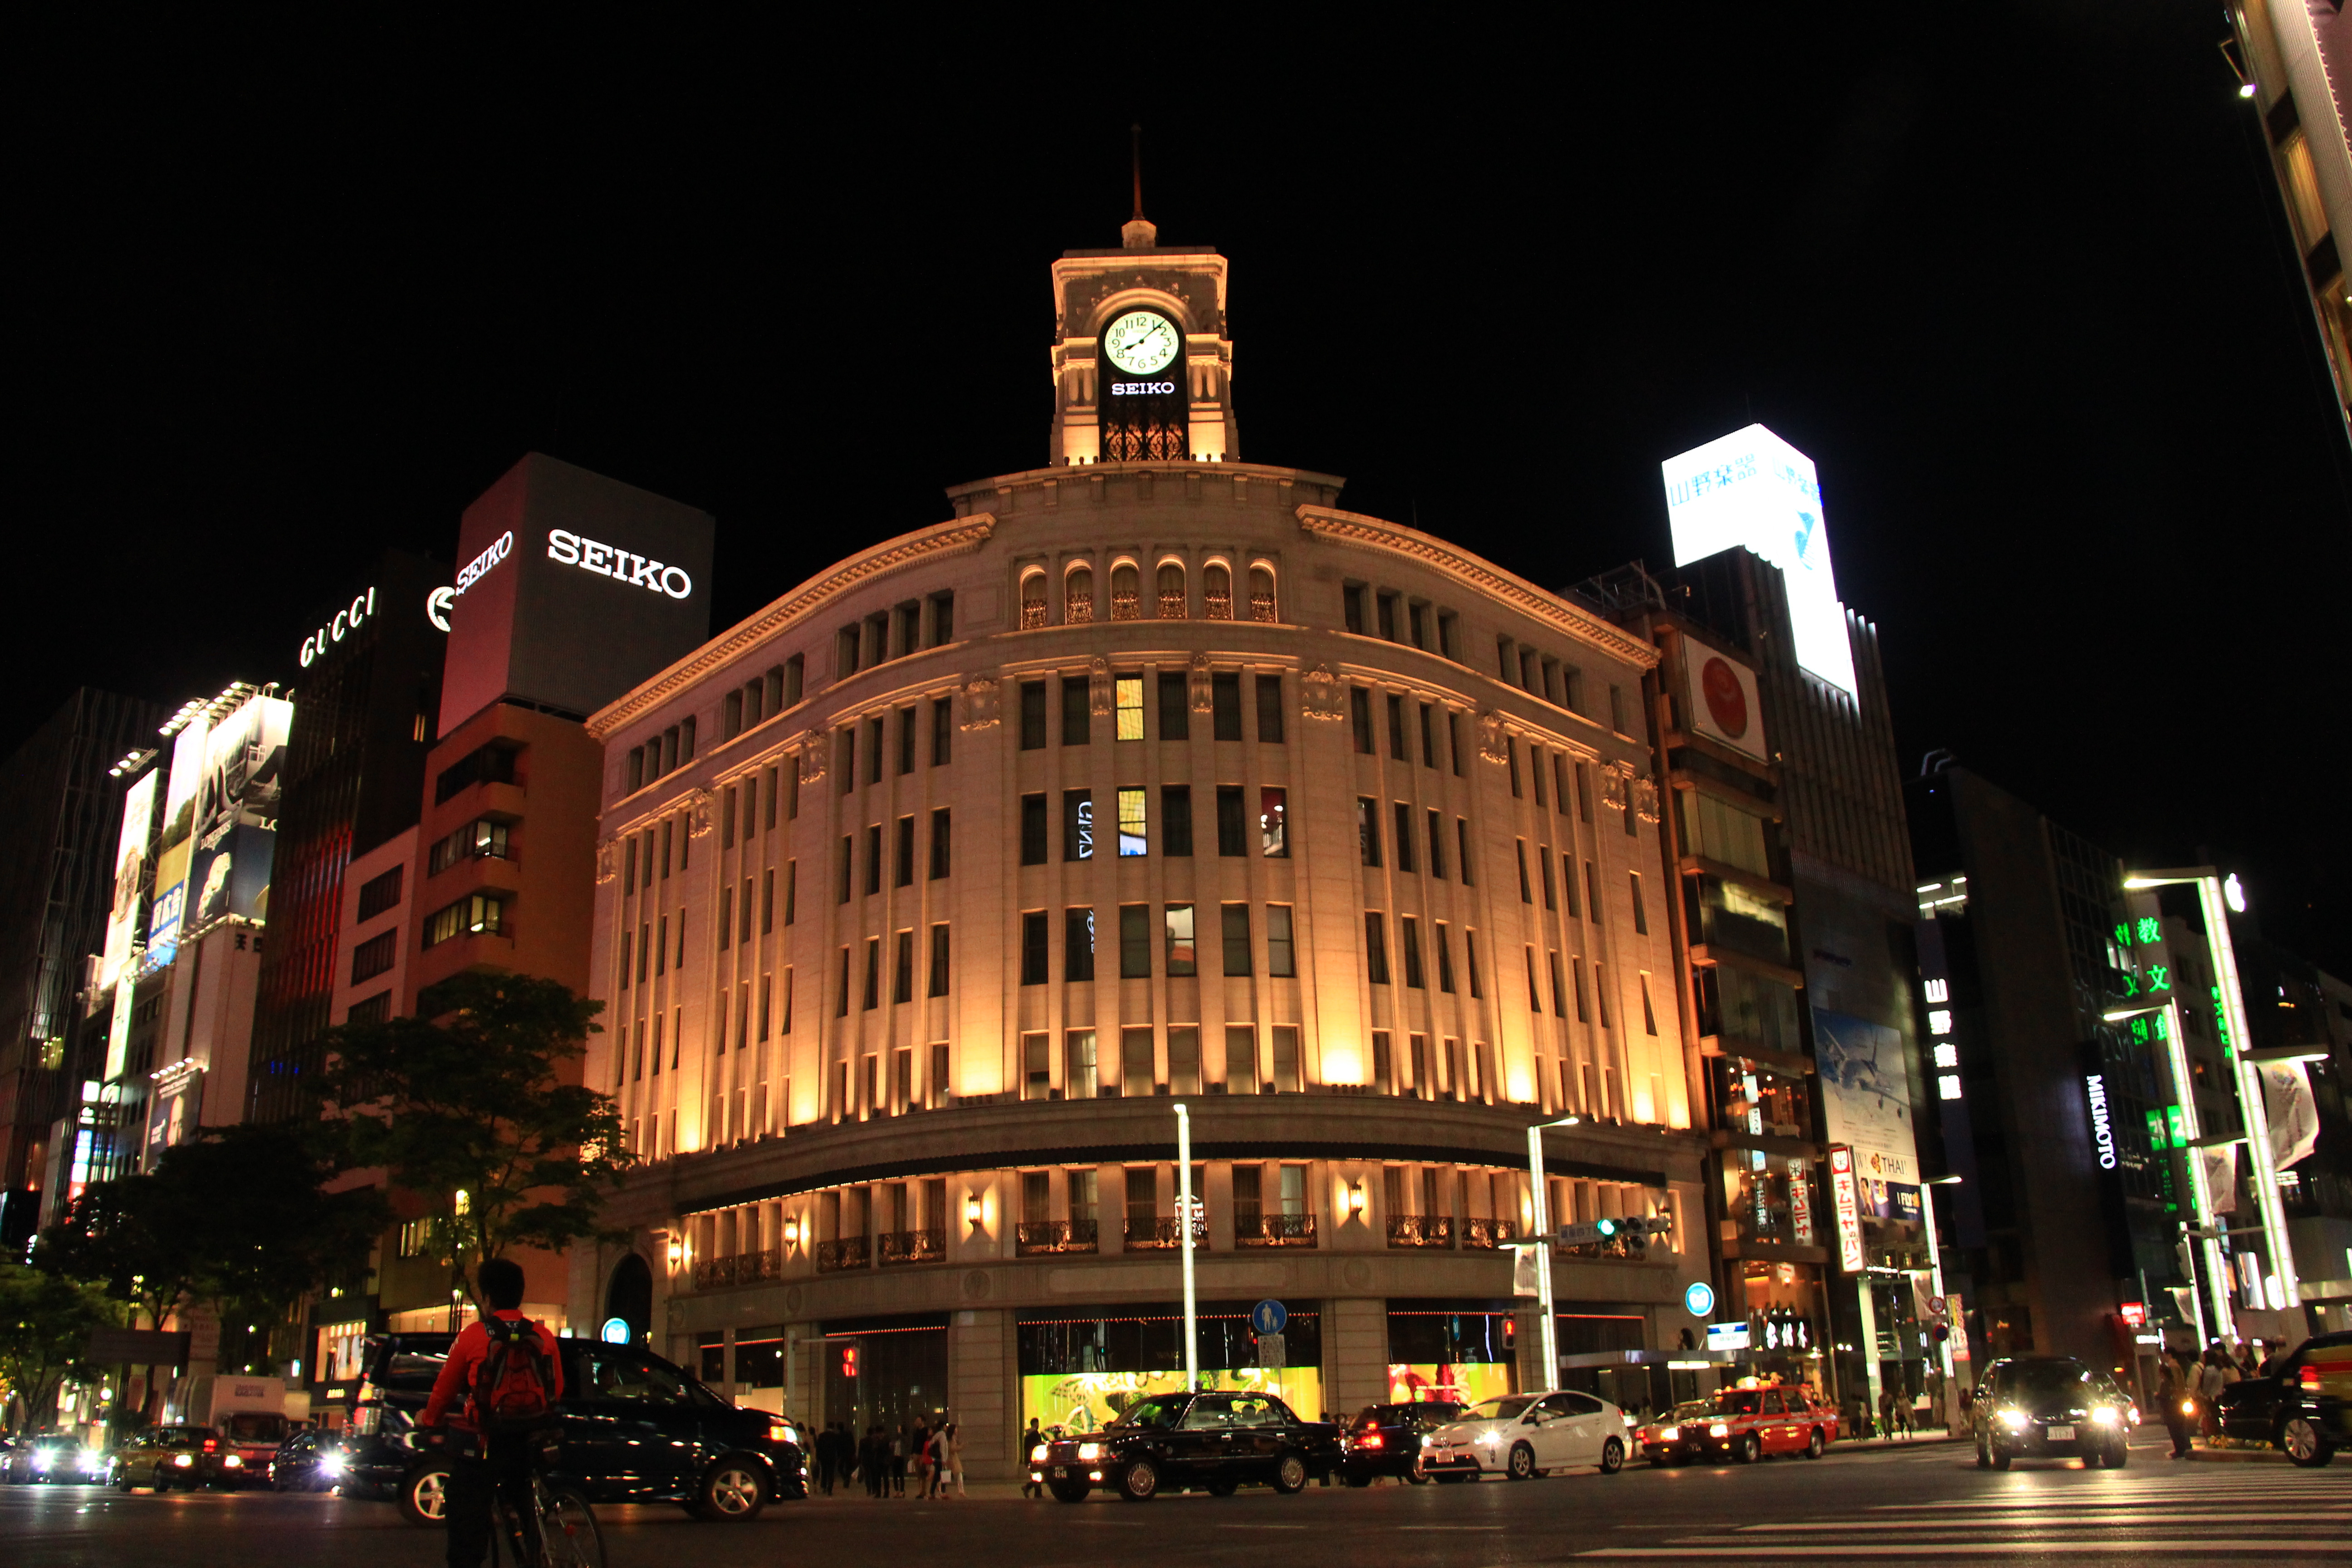 银座是东京最繁华的商业区之一,被称为"东京的心脏.银座大道全长1.